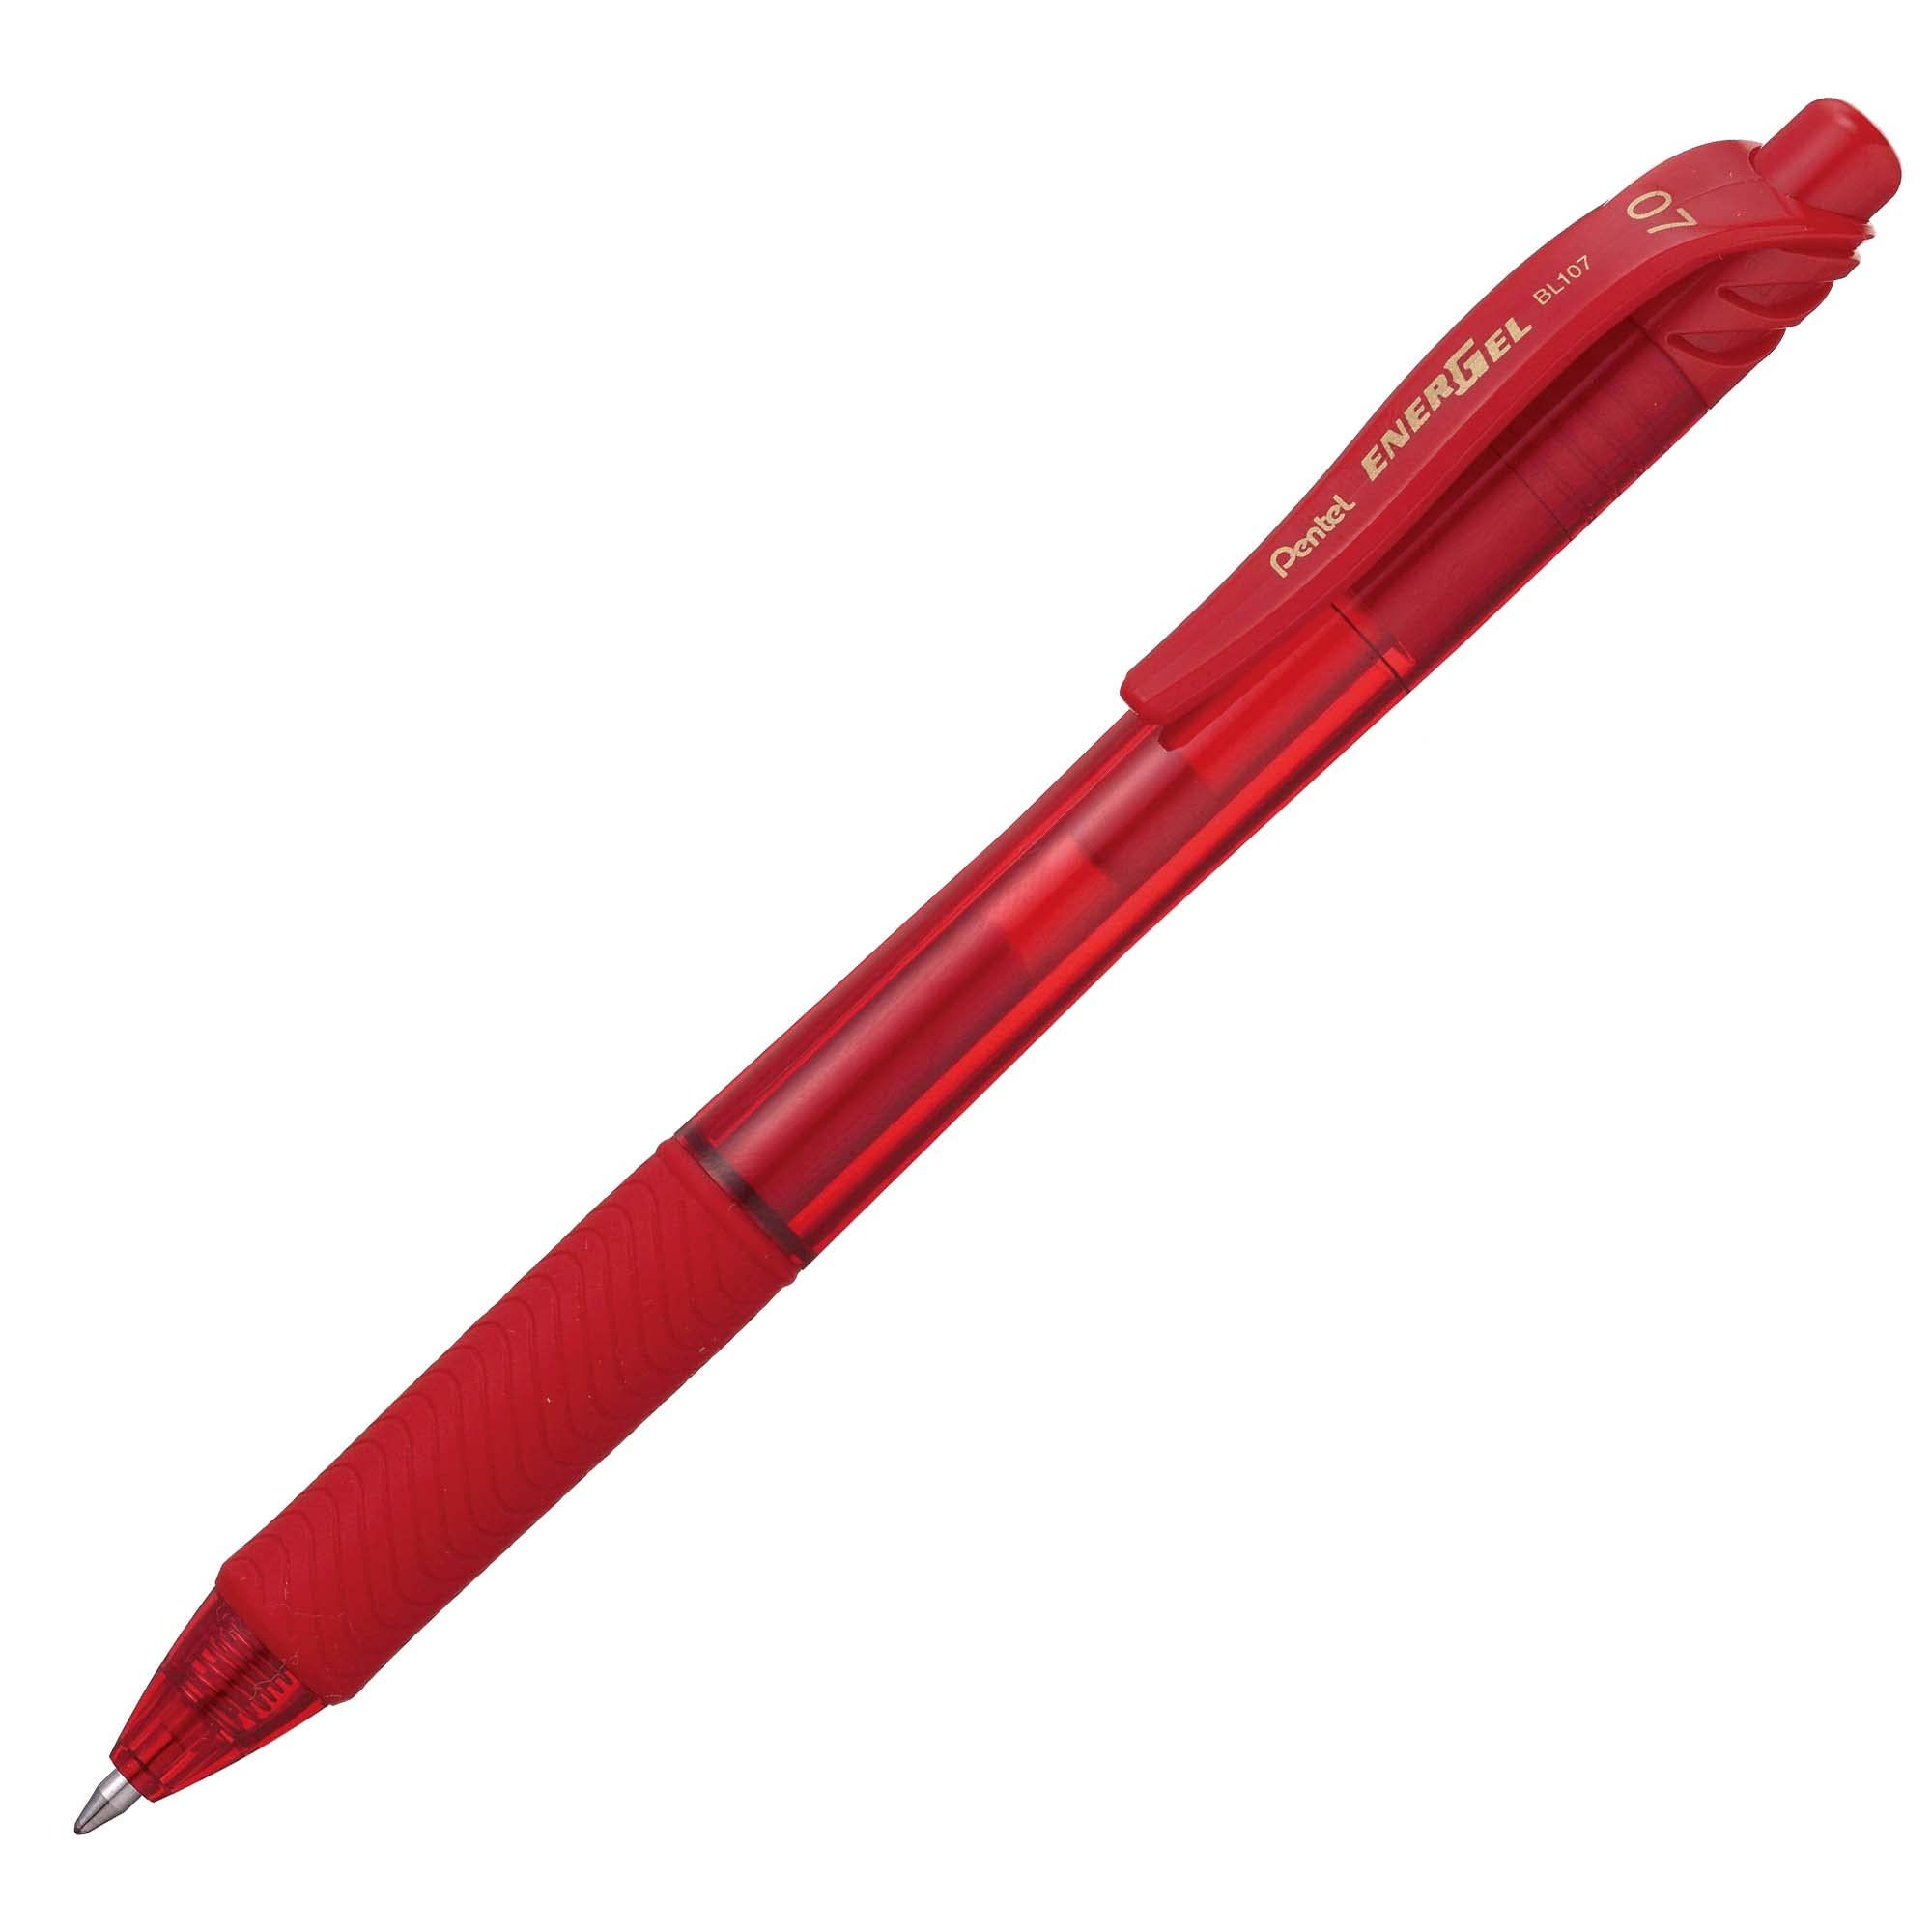 Bolígrafo Pentel energel, punto 0.7 mm ( Bolígrafo Pentel energel tinta negra de secado rápido, retráctil con clip, no mancha, punta metálica 0.7 mm (mediano), hecho de 84% material reciclado, escritura suave y ligera, ideal para escritura rápida o zurdos                                          mediano), x tinta roja, 1 pieza          - BL107-B